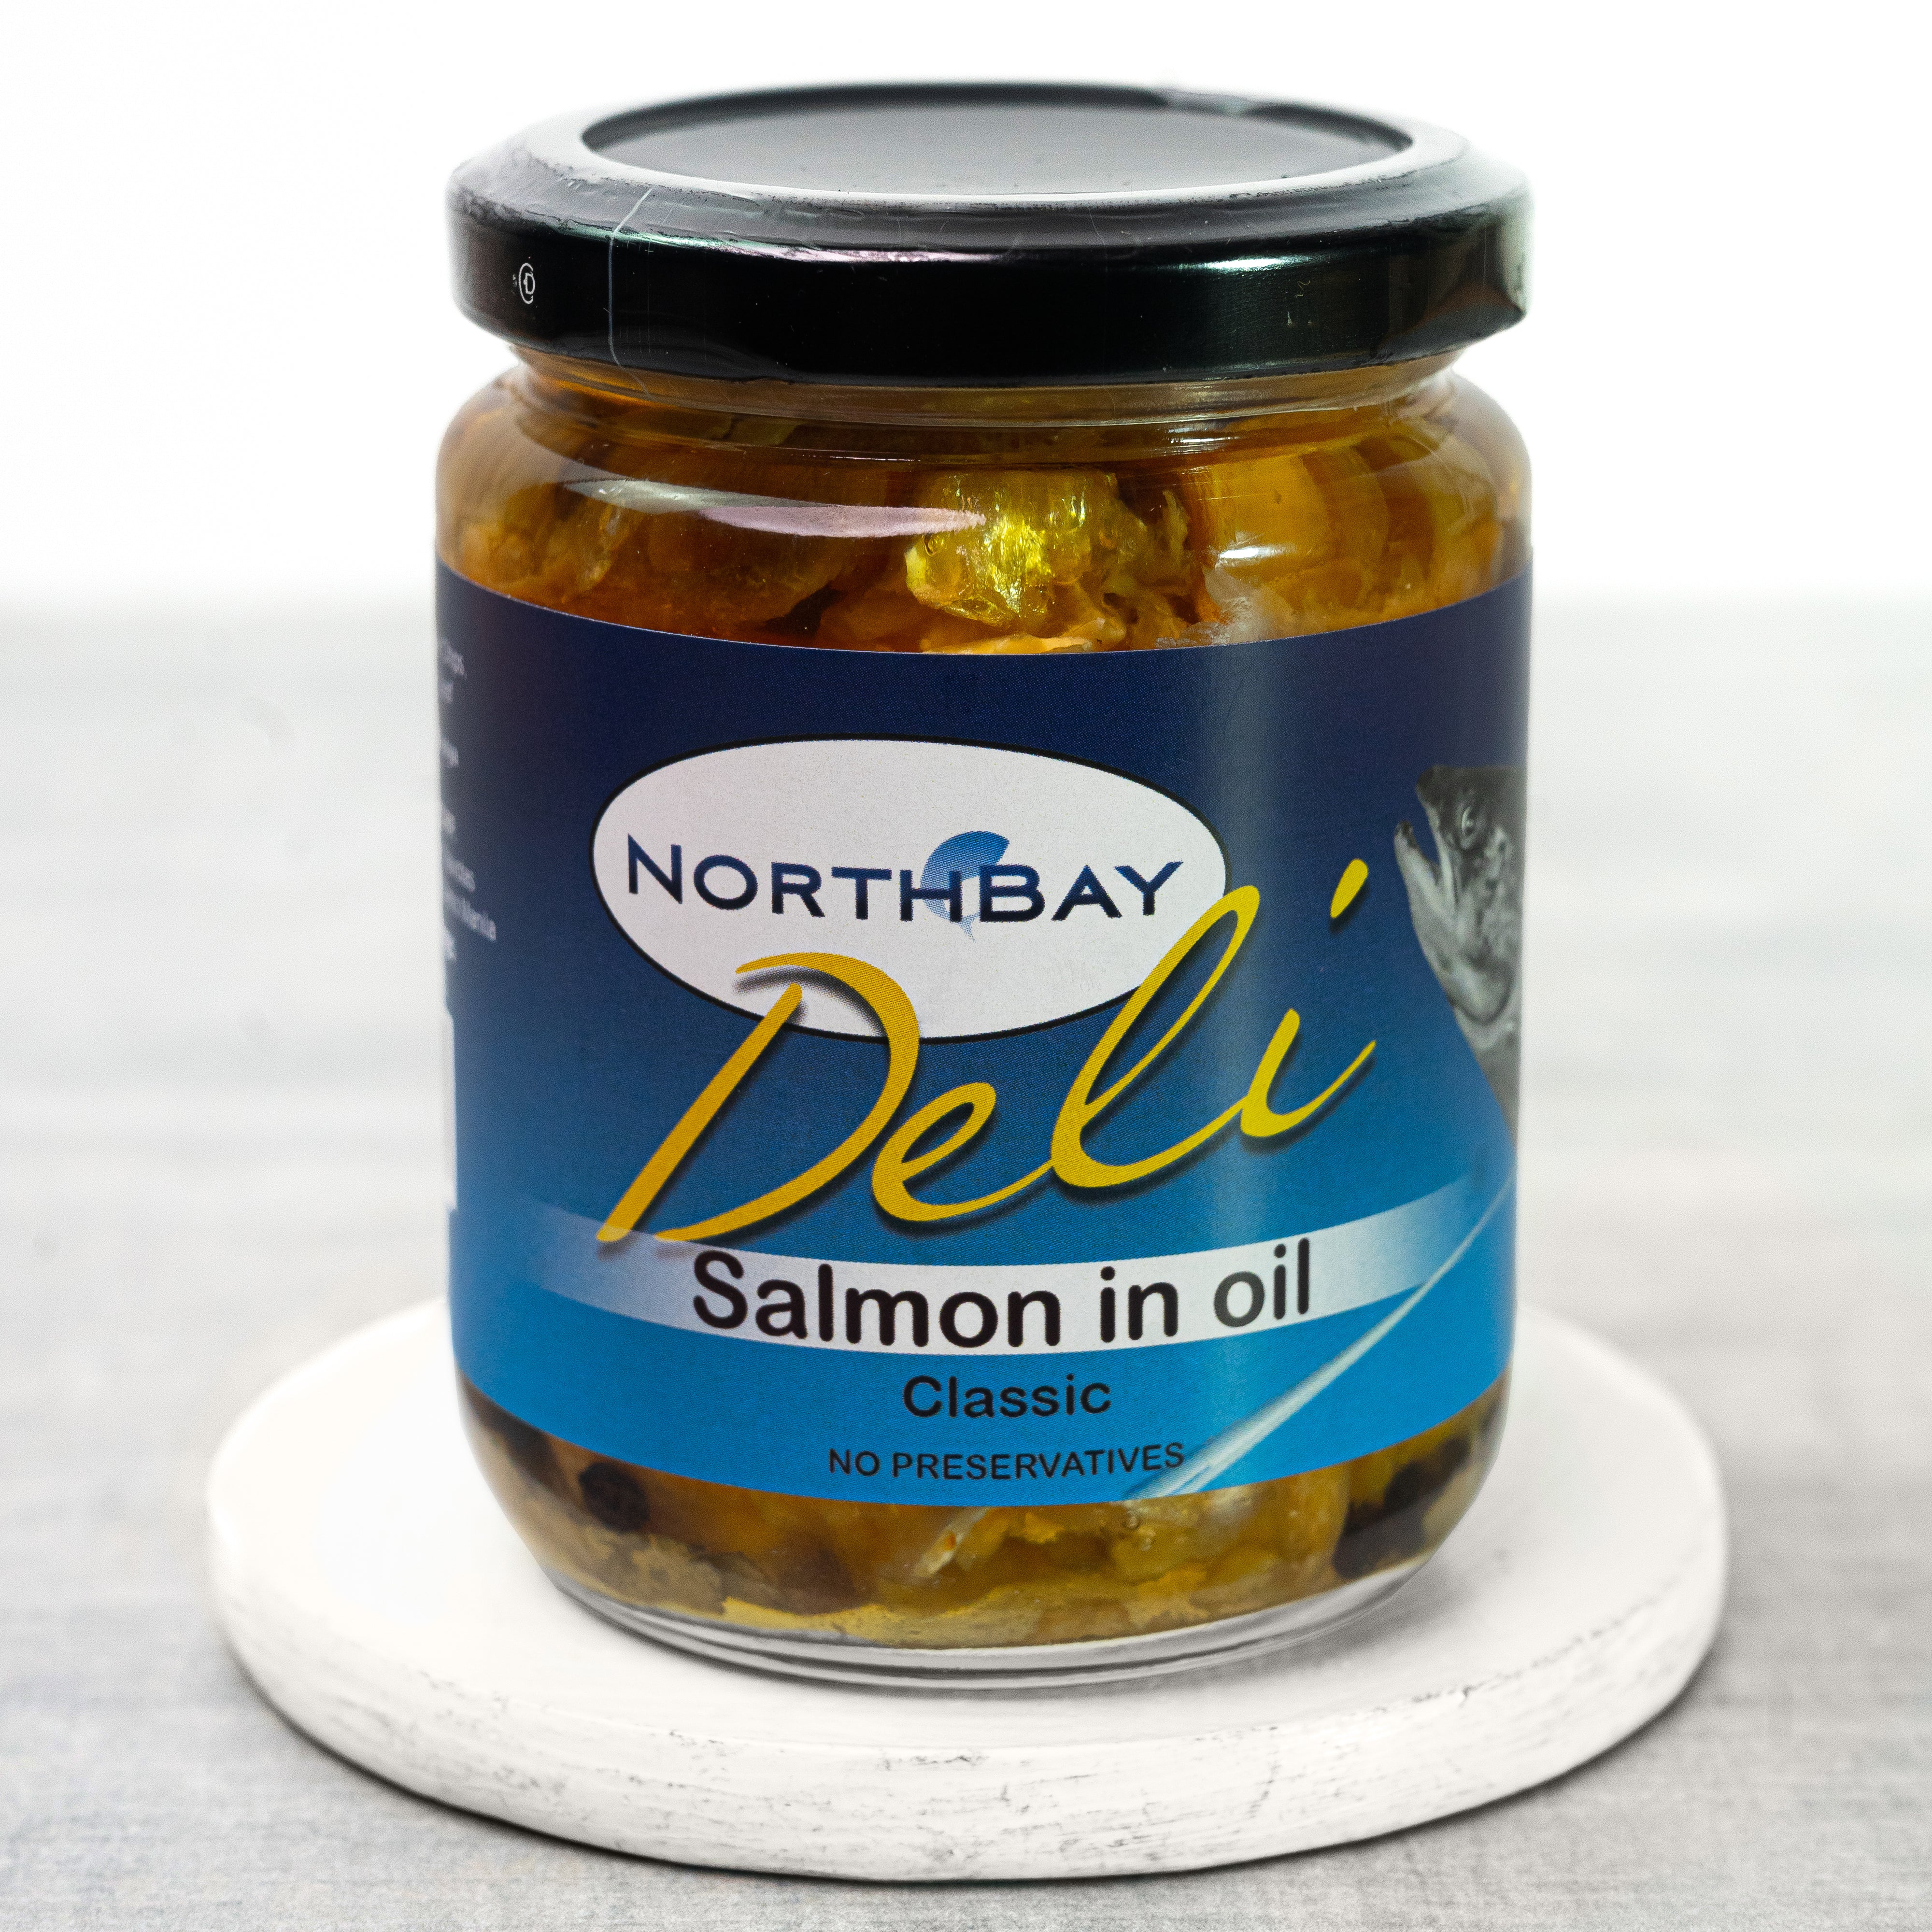 Northbay Deli Salmon in Oil Classic